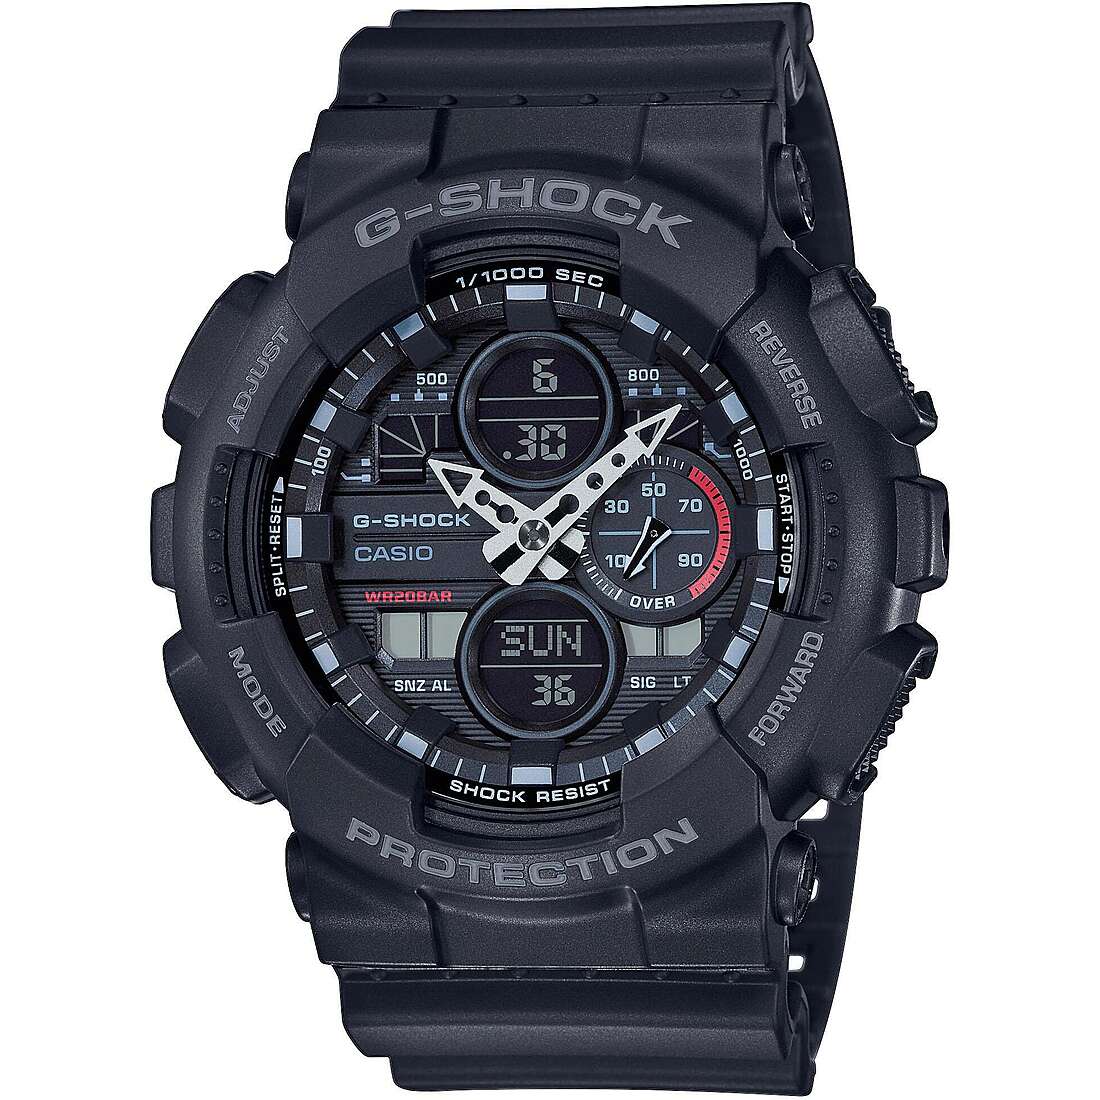 orologio G-Shock Gs Basic Nero multifunzione uomo GA-140-1A1ER